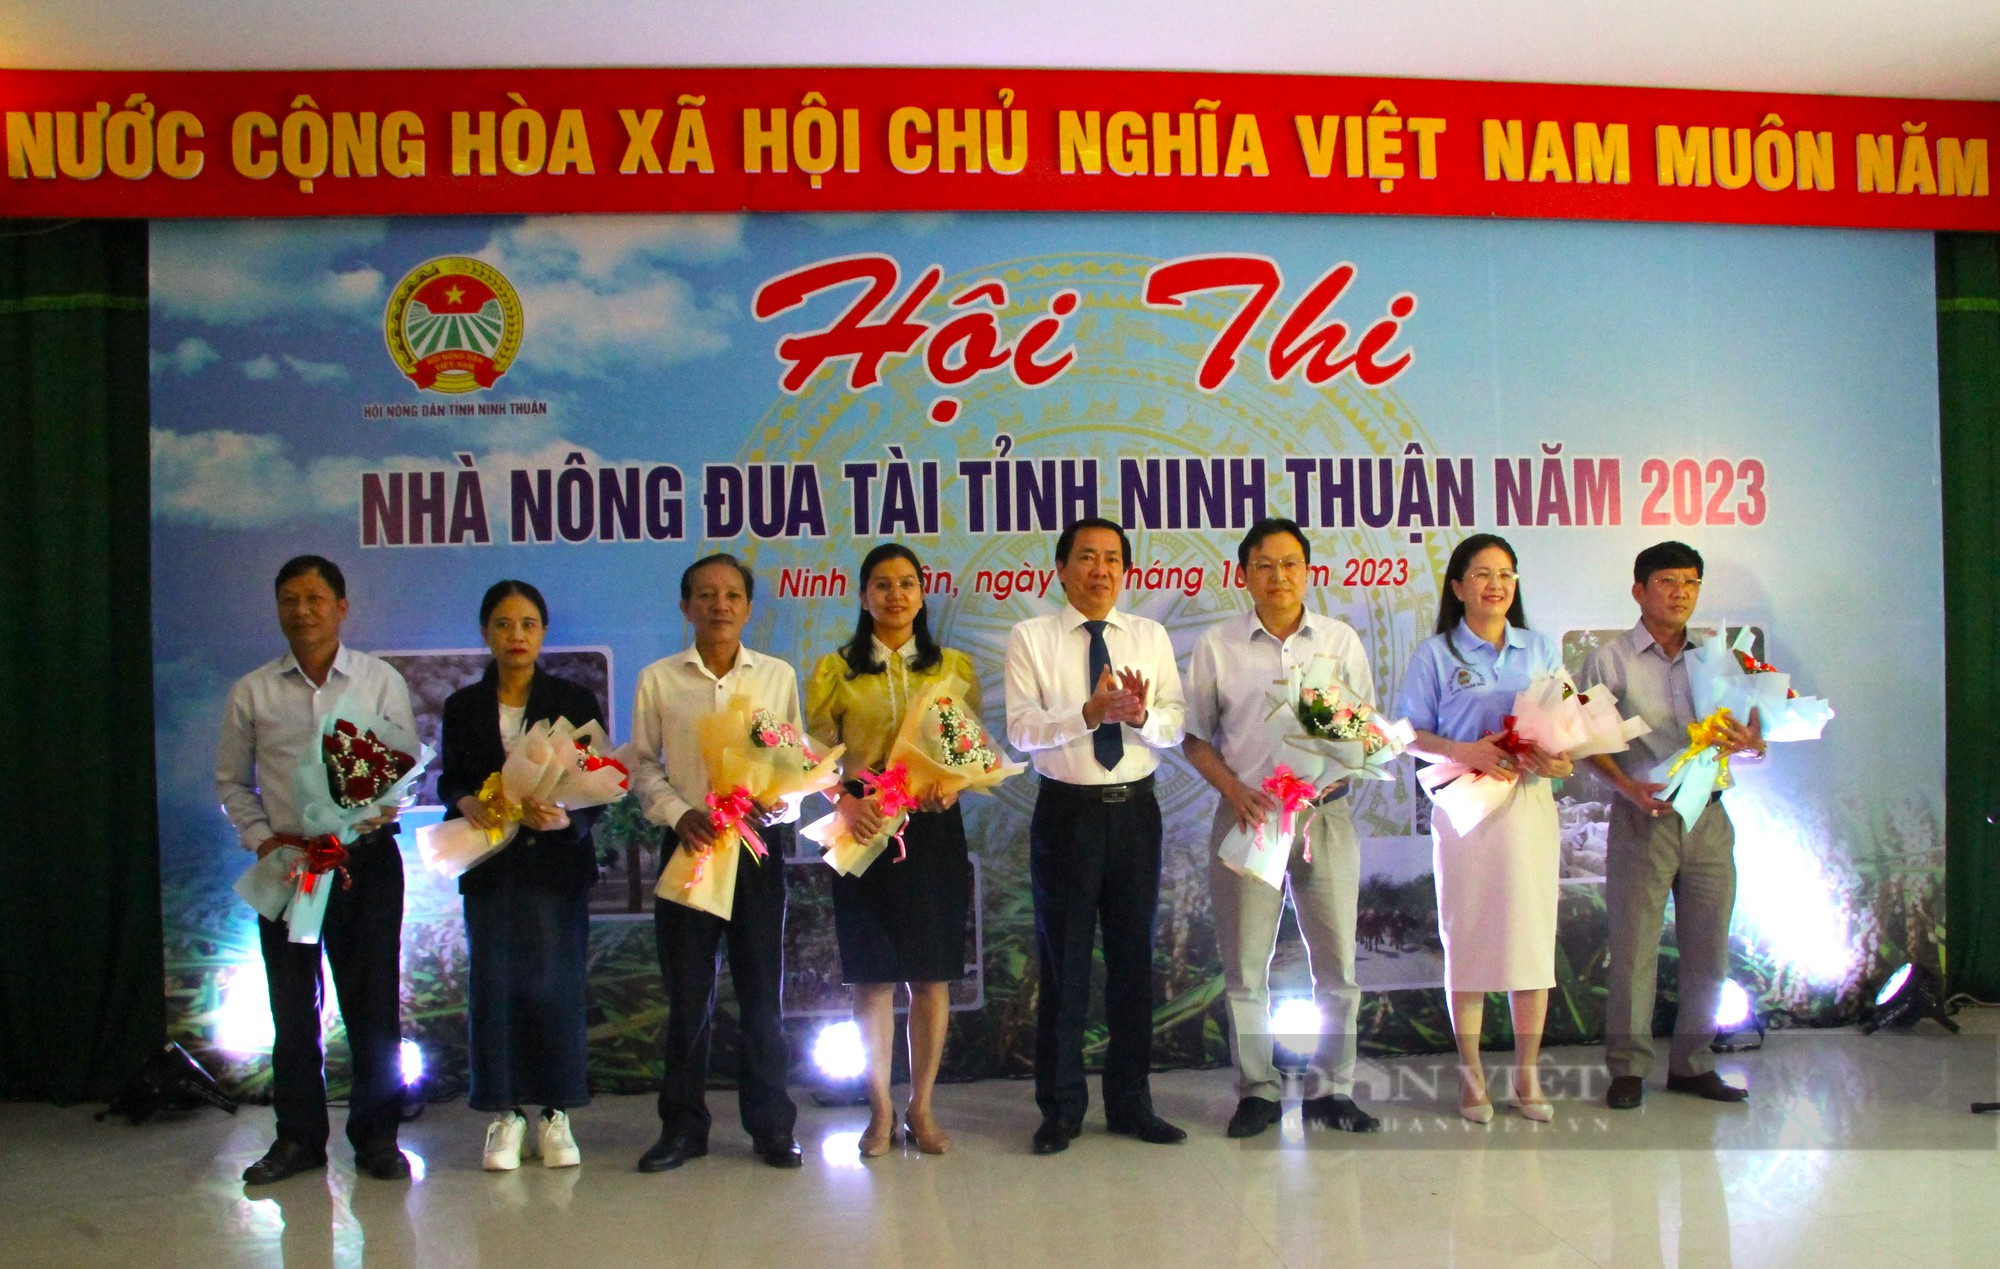 Nông dân Ninh Thuận trổ tài tại hội thi nhà nông đua tài năm 2023 - Ảnh 1.